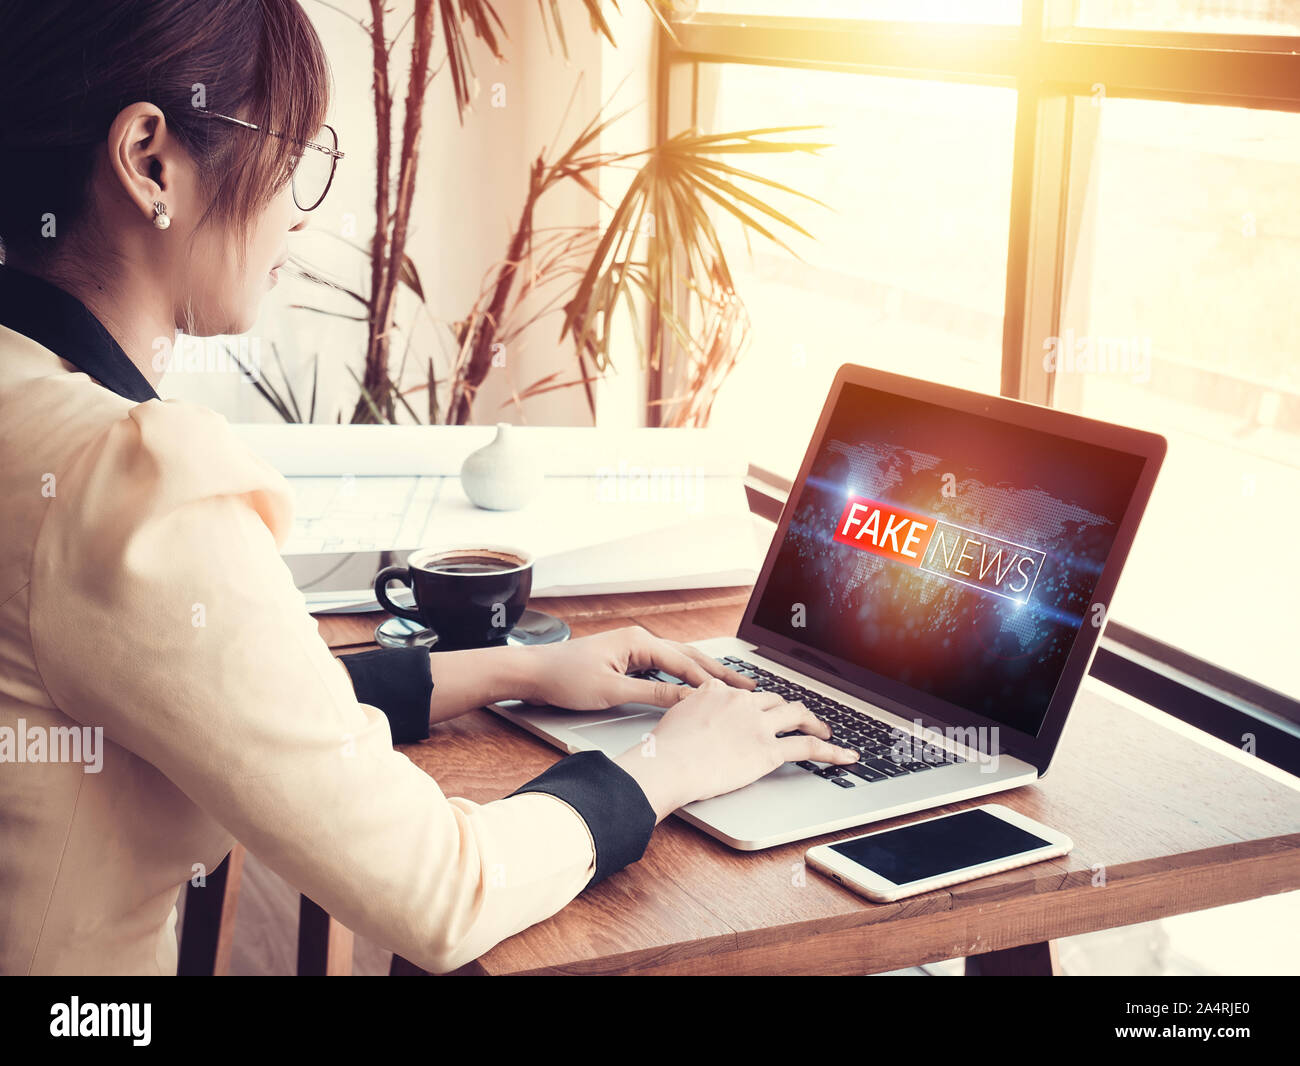 Business woman reading gefälschte Nachrichten oder Hokuspokus auf Inhalte im Internet via Laptop am Arbeitsplatz Stockfoto